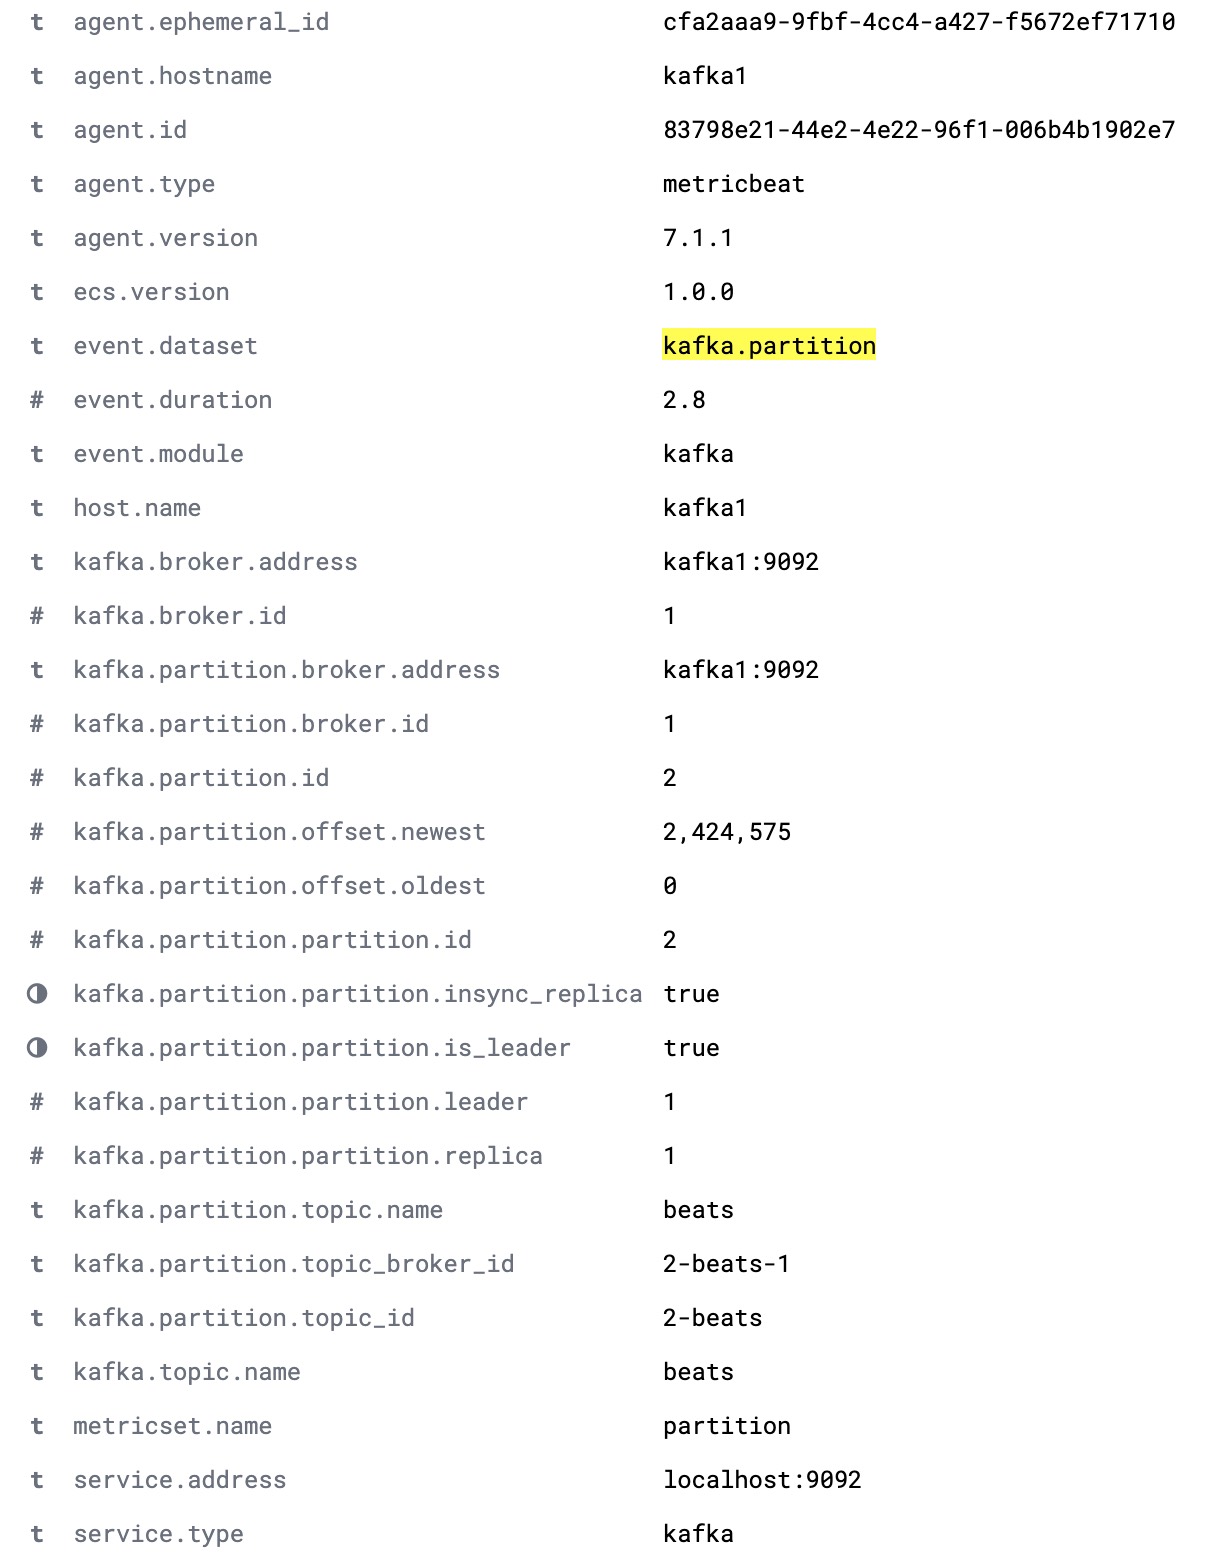 Documento completo do kafka.partition fornecendo todos os detalhes das partições de um cluster